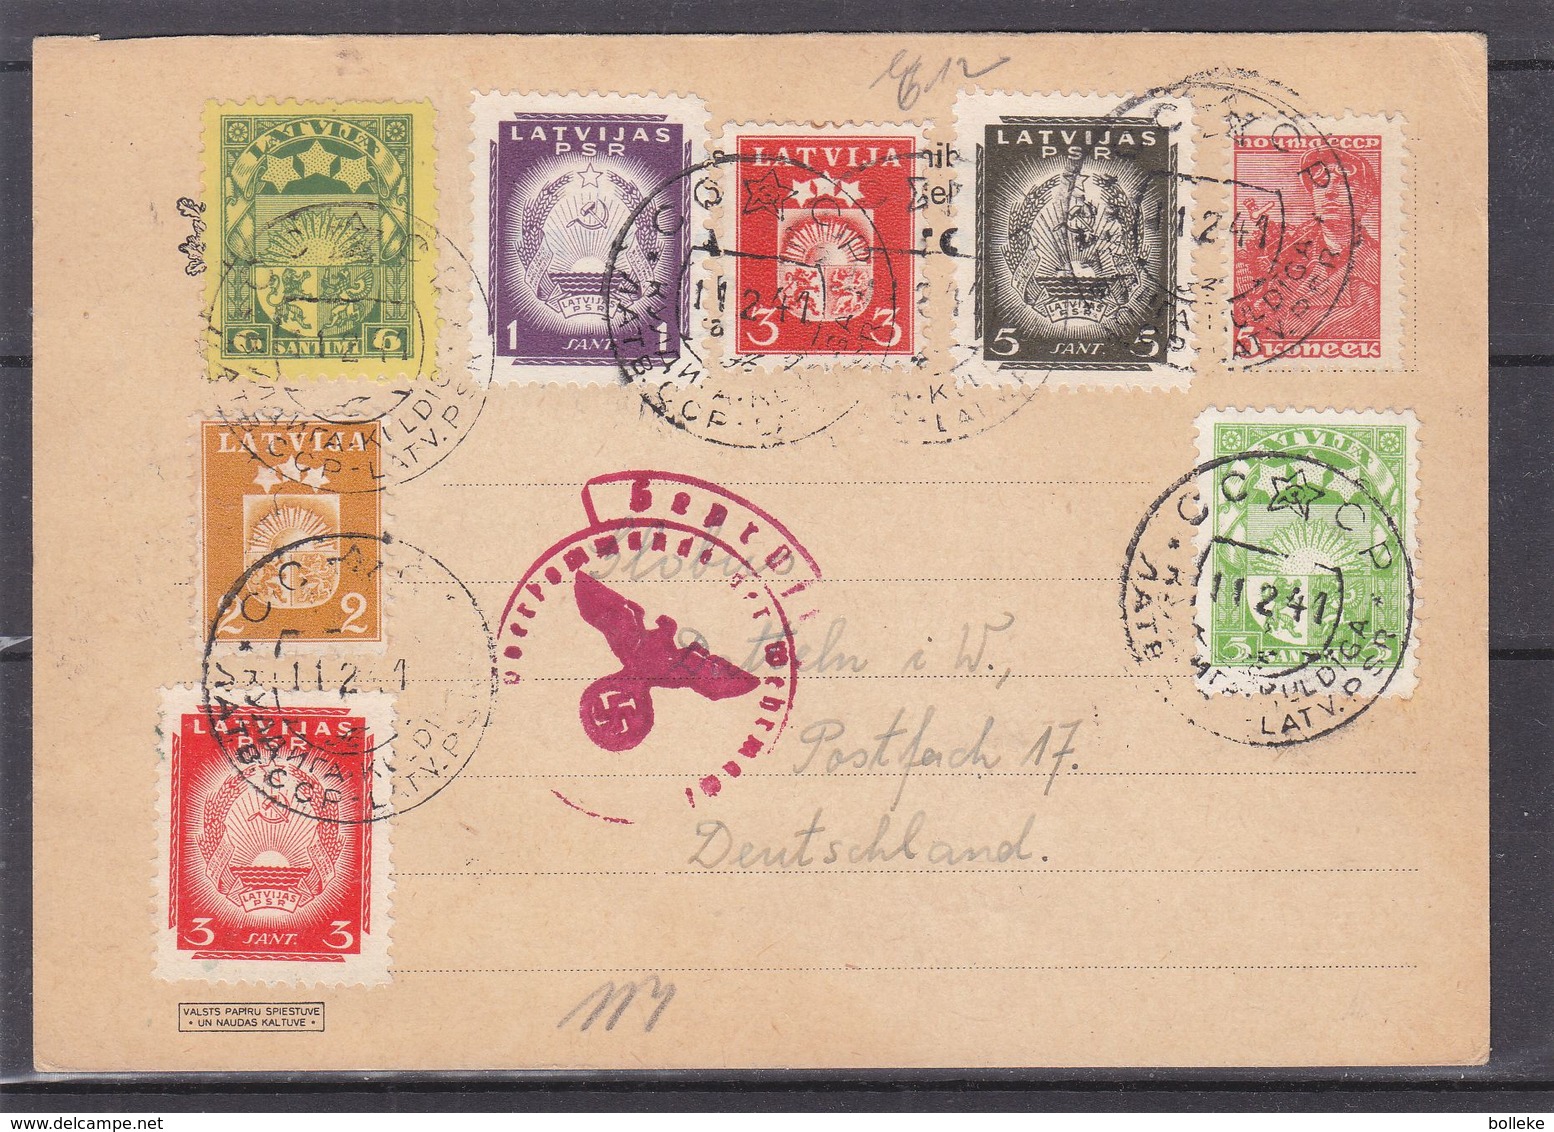 Lettonie - Carte Postale De 1941 - Oblit Kuldiga - Exp Vers Datteln - Avec Censure - Avec Timbres Russes Et Lettoniens - Letland